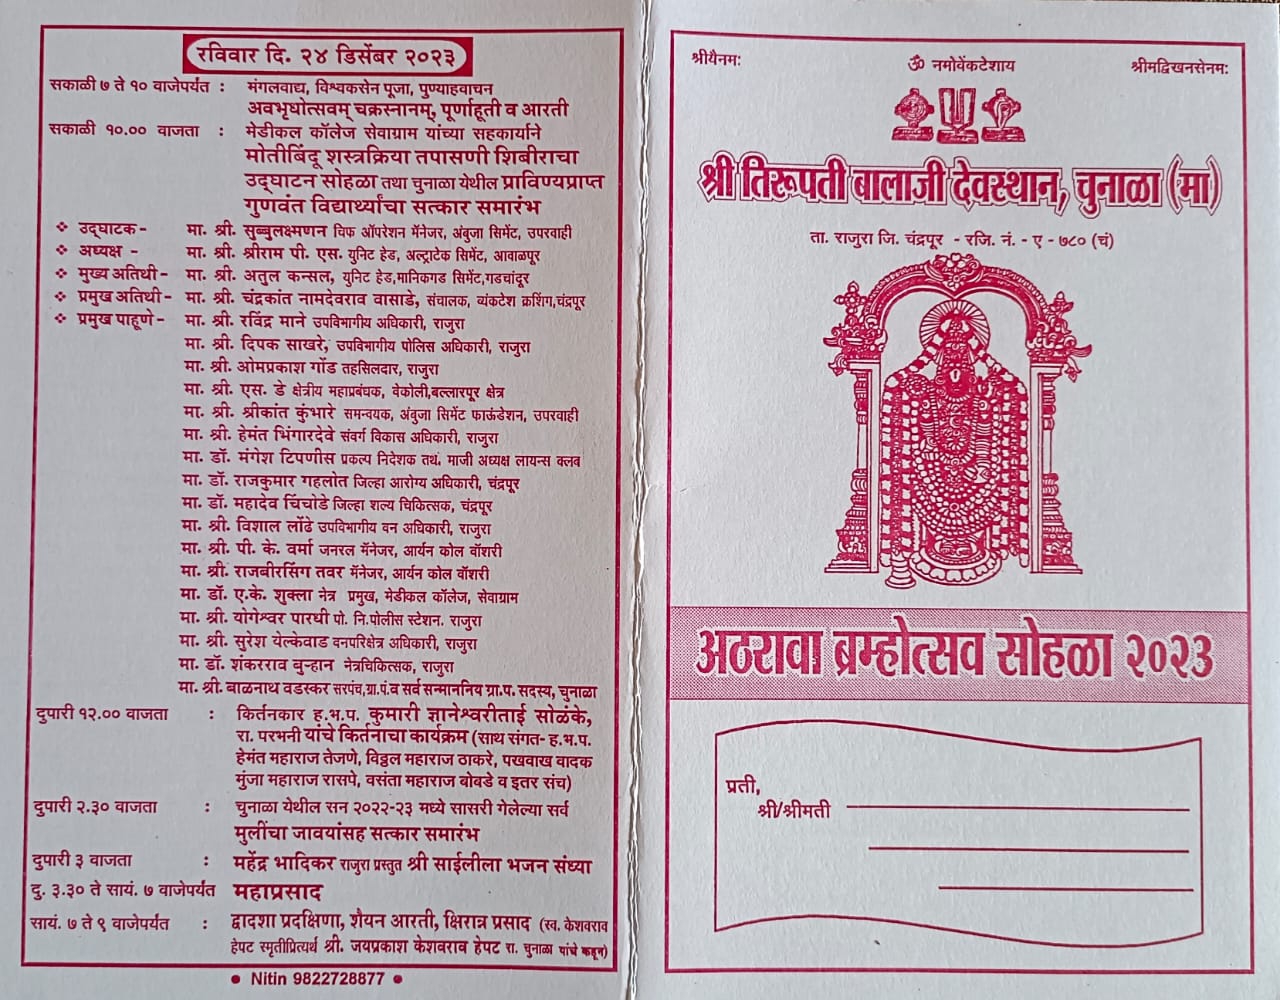 उद्यापासून चुनाळ्यात श्री तिरूपती बालाजीचा अठरावा ब्रम्होत्सव सोहळा    २१ डिसेंबर ते २४ डिसेंबर पर्यंत विविध धार्मिक, सामाजिक व सांस्कृतिक कार्यक्रम